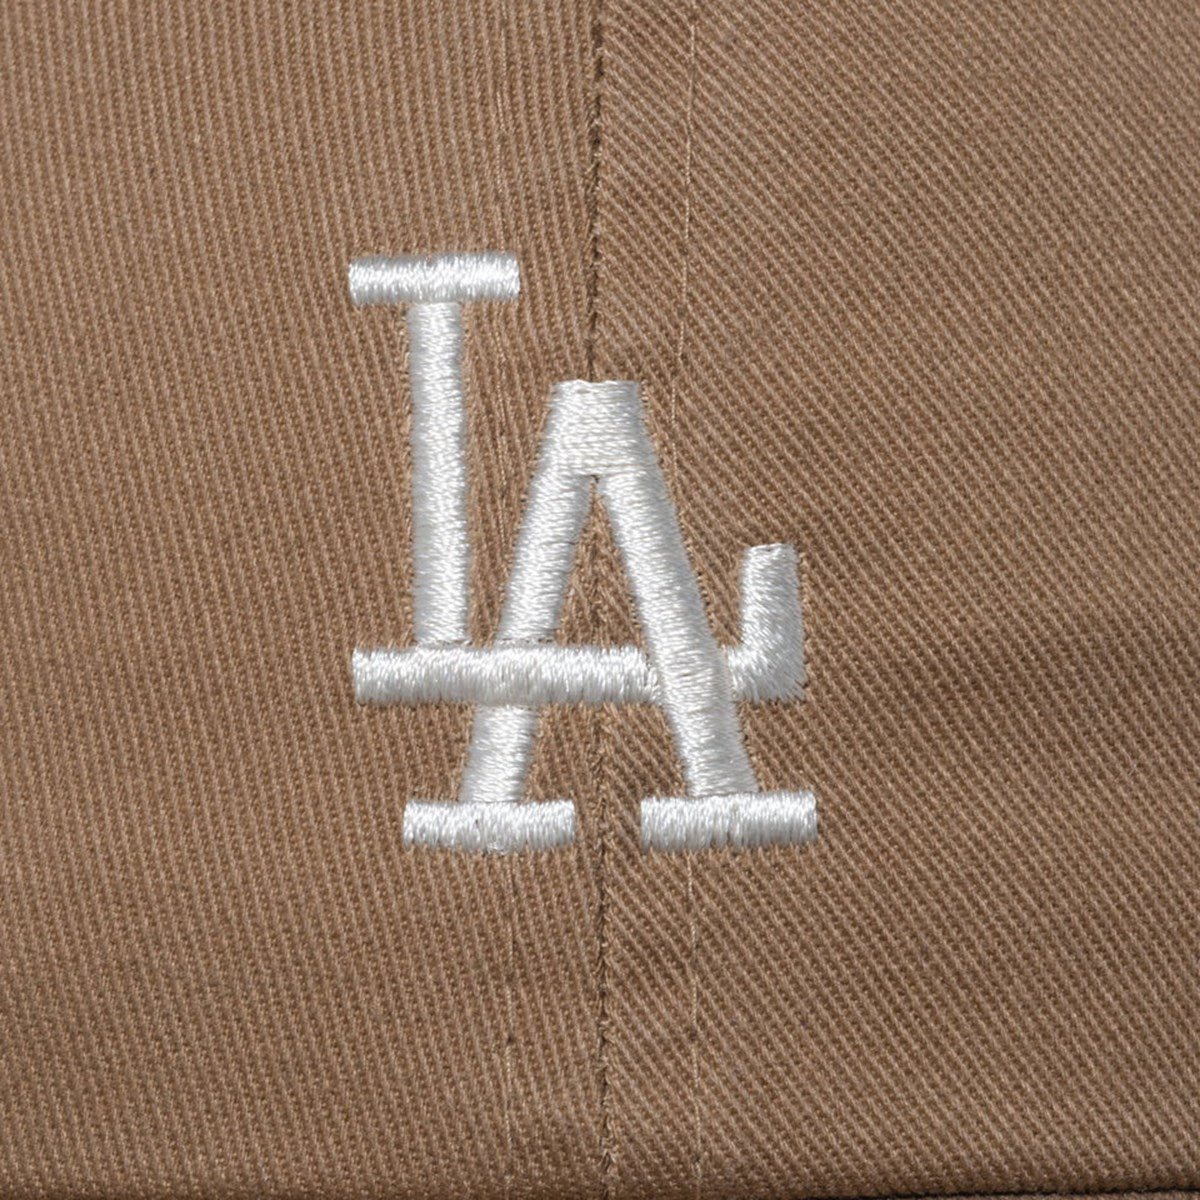 NEW ERA Los Angeles Dodgers - Casual Classic MID LOGO KHA CRM【14109526】